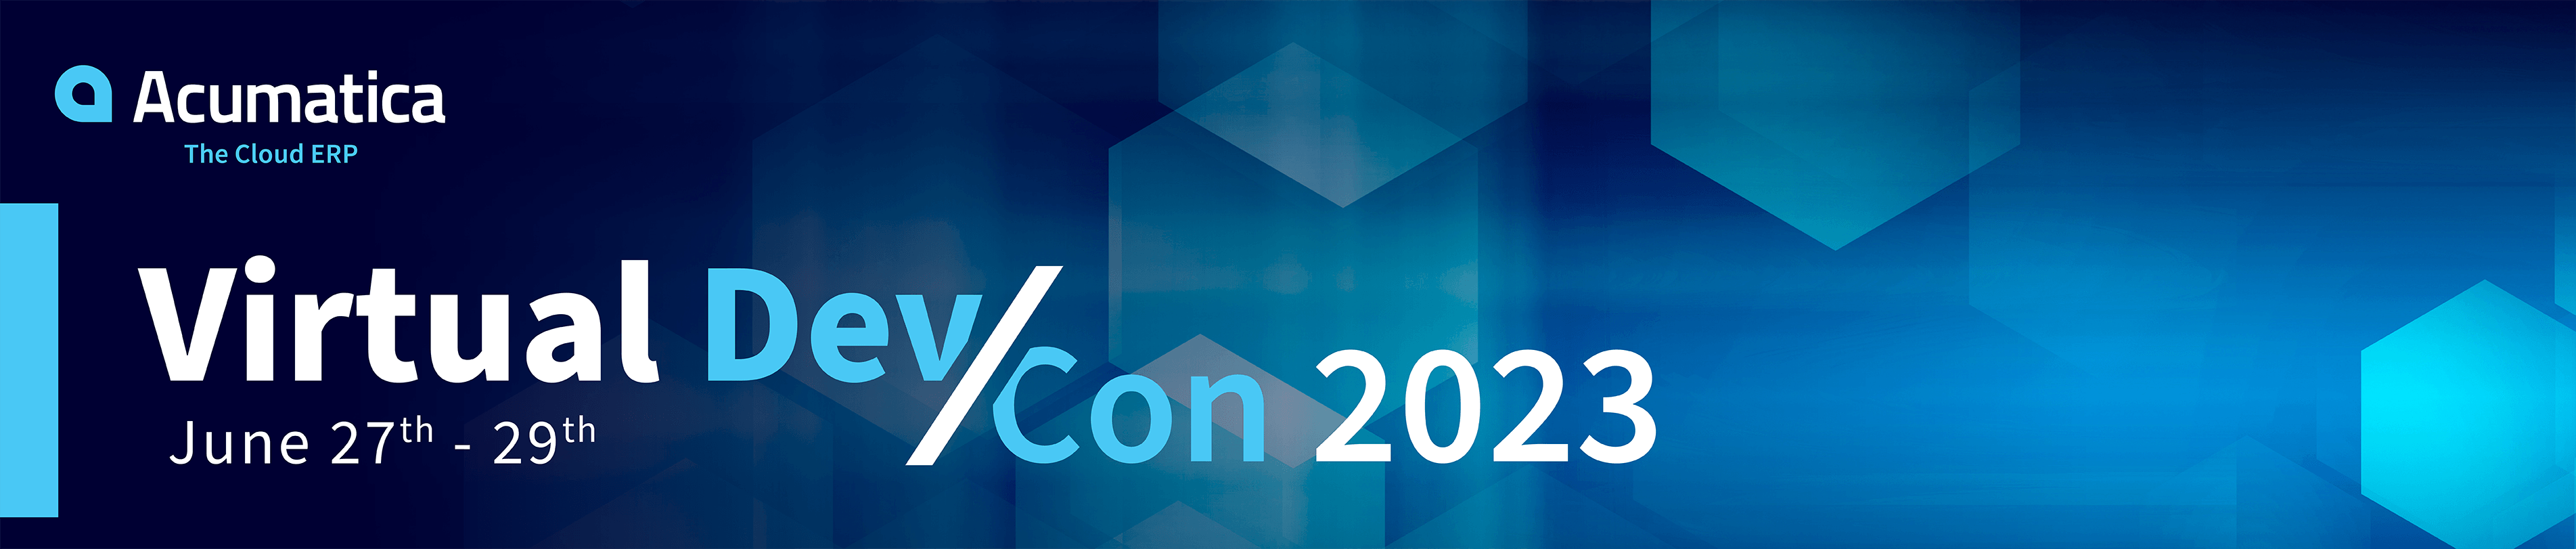 Conferencia de desarrolladores de Acumatica 2023